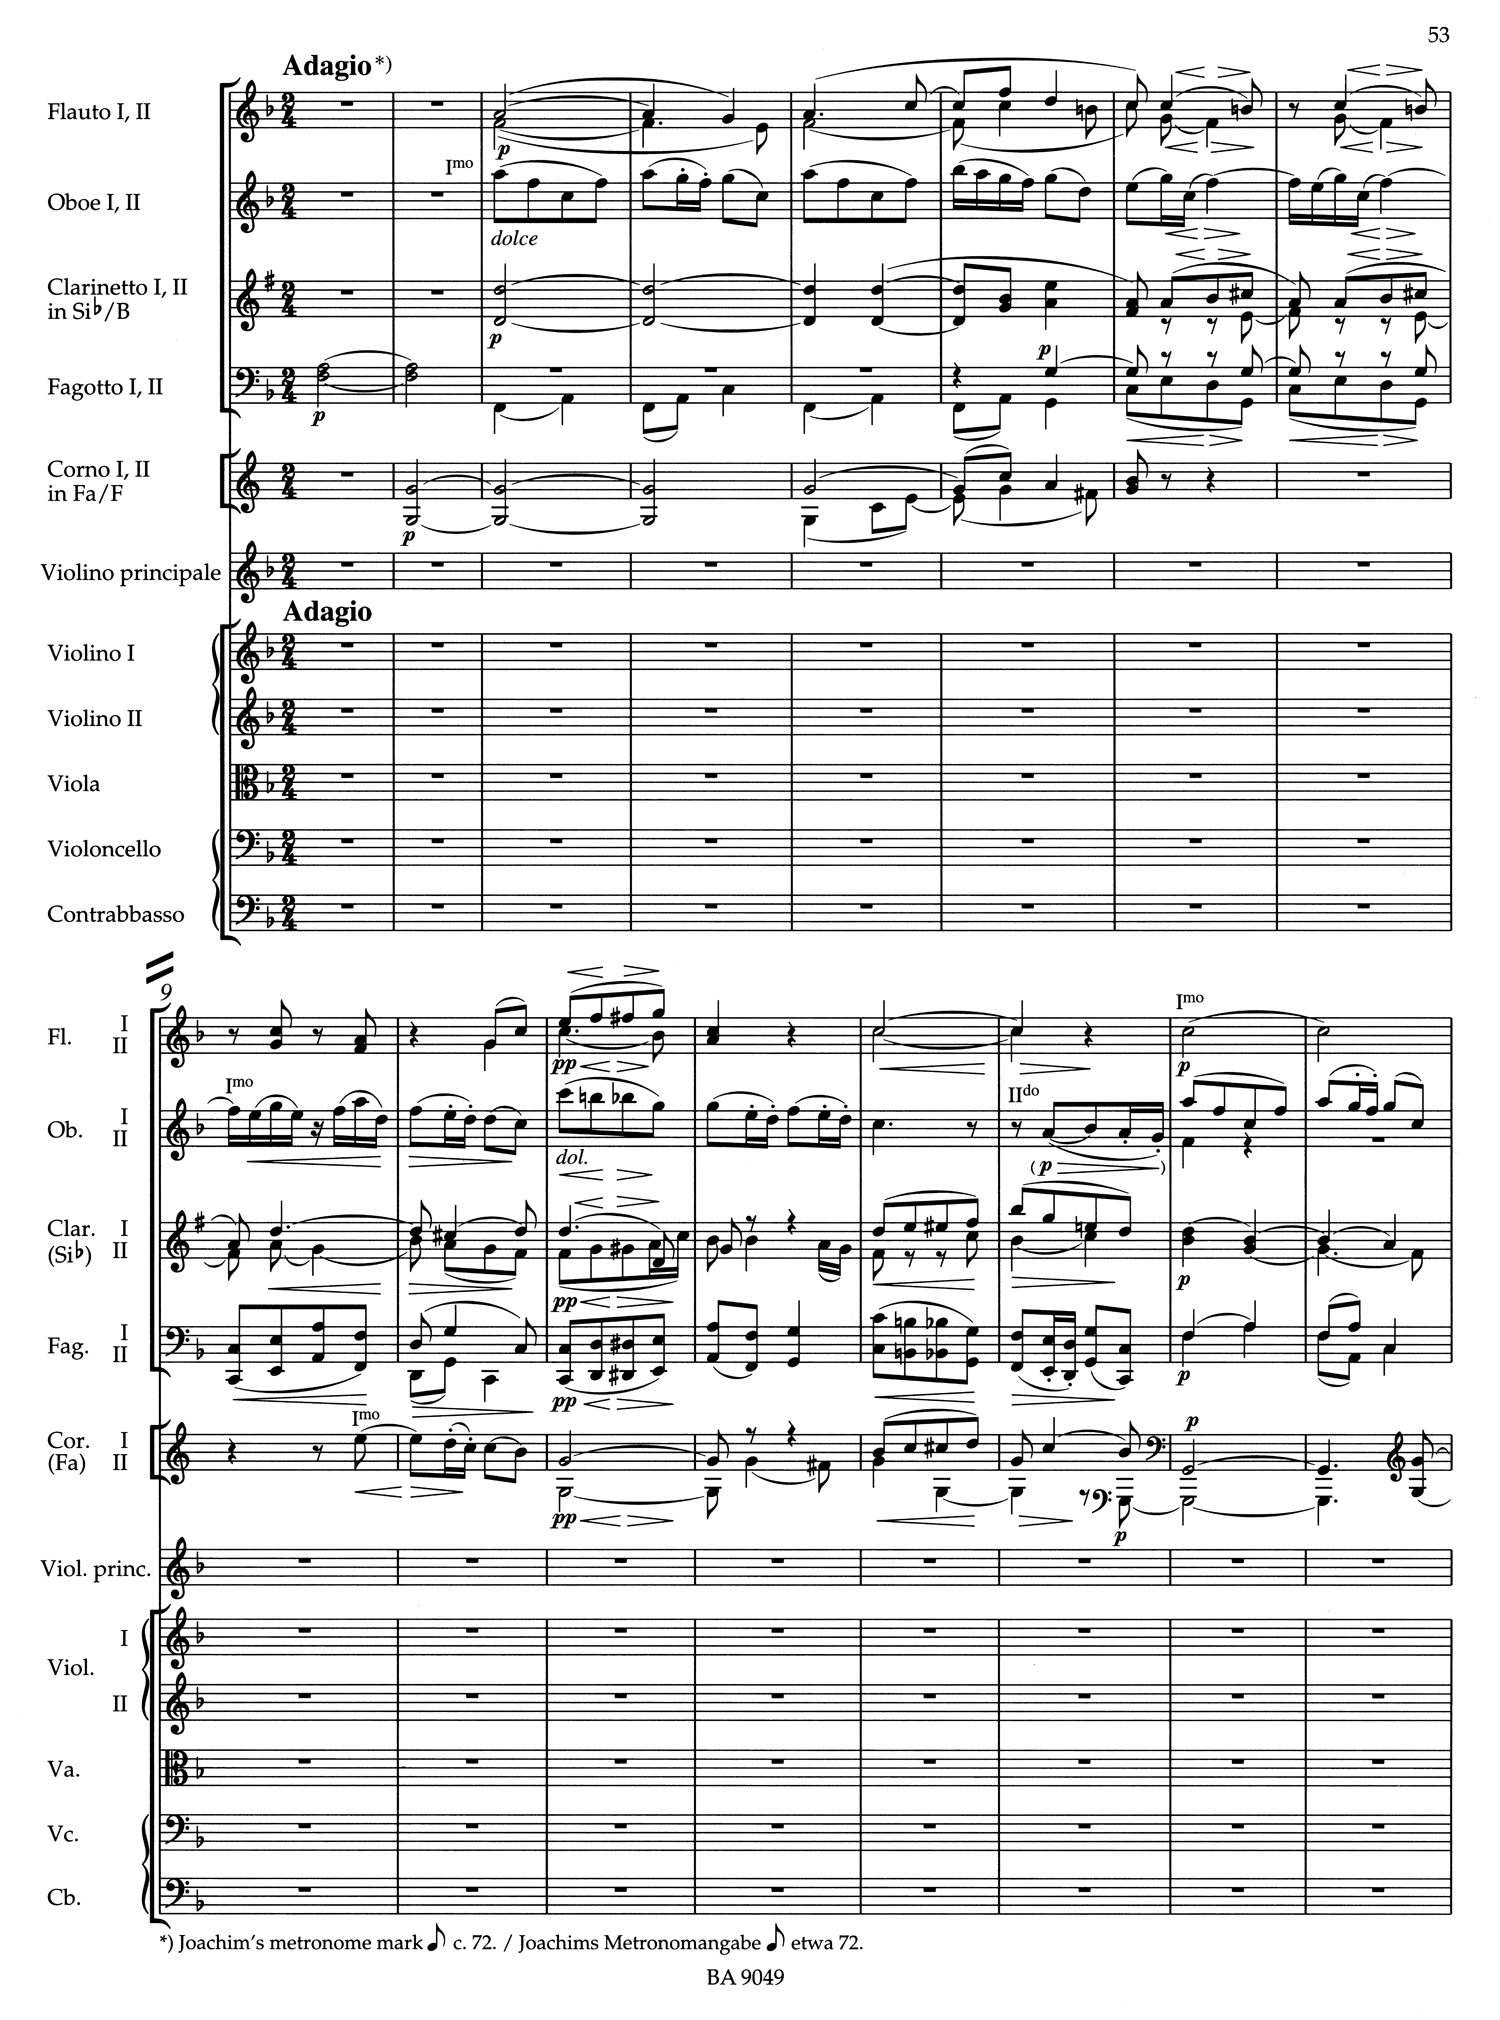 Brahms Violin Score 1.jpg